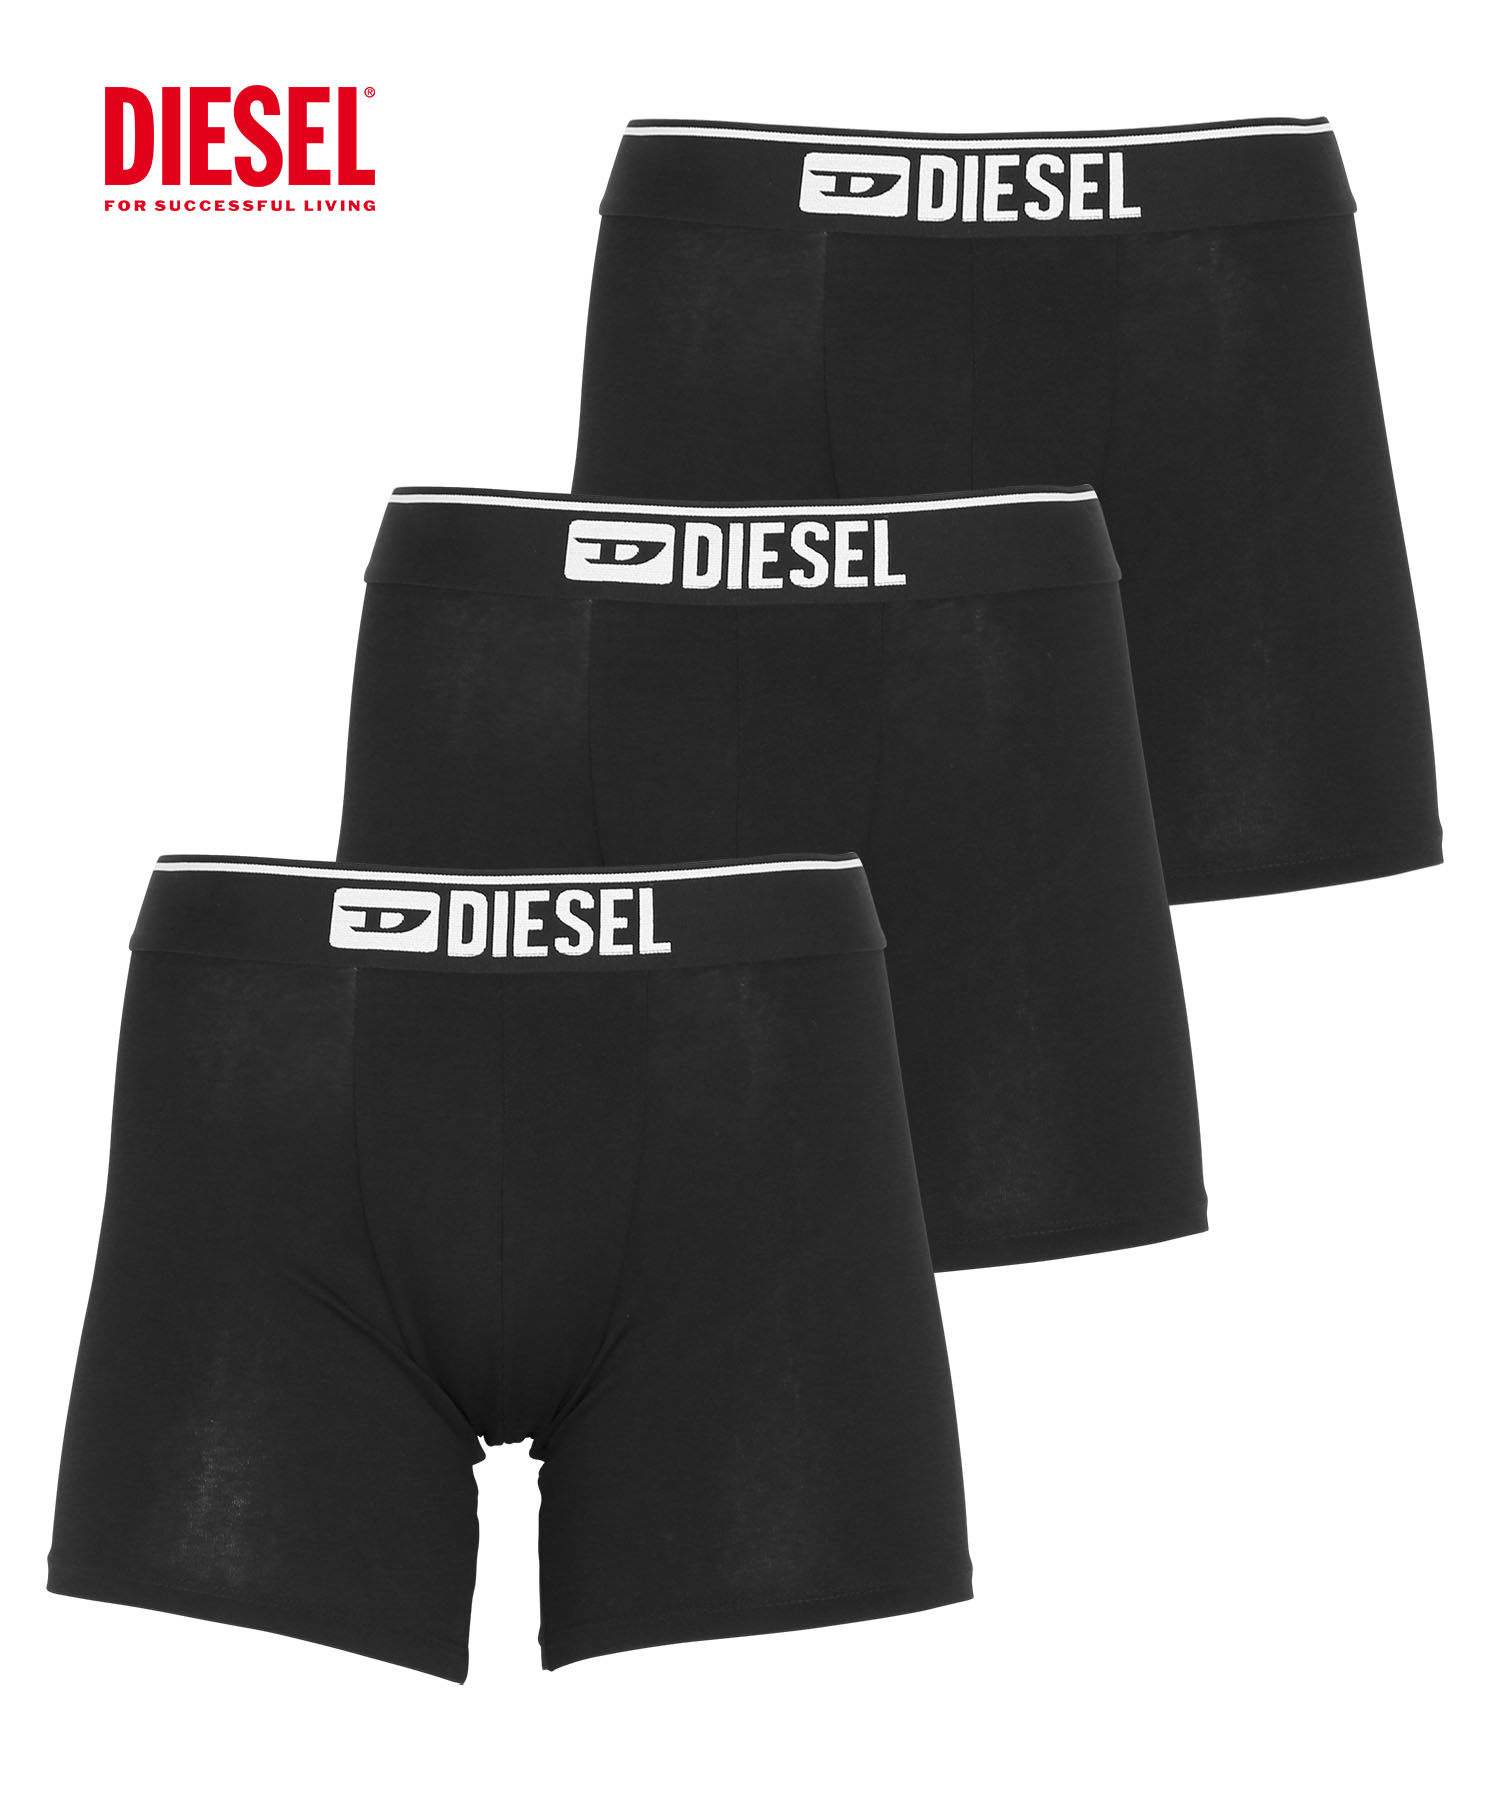 ディーゼル DIESEL ボクサーパンツ 3枚セット メンズ アンダーウェア 男性 下着 綿混 コッ...